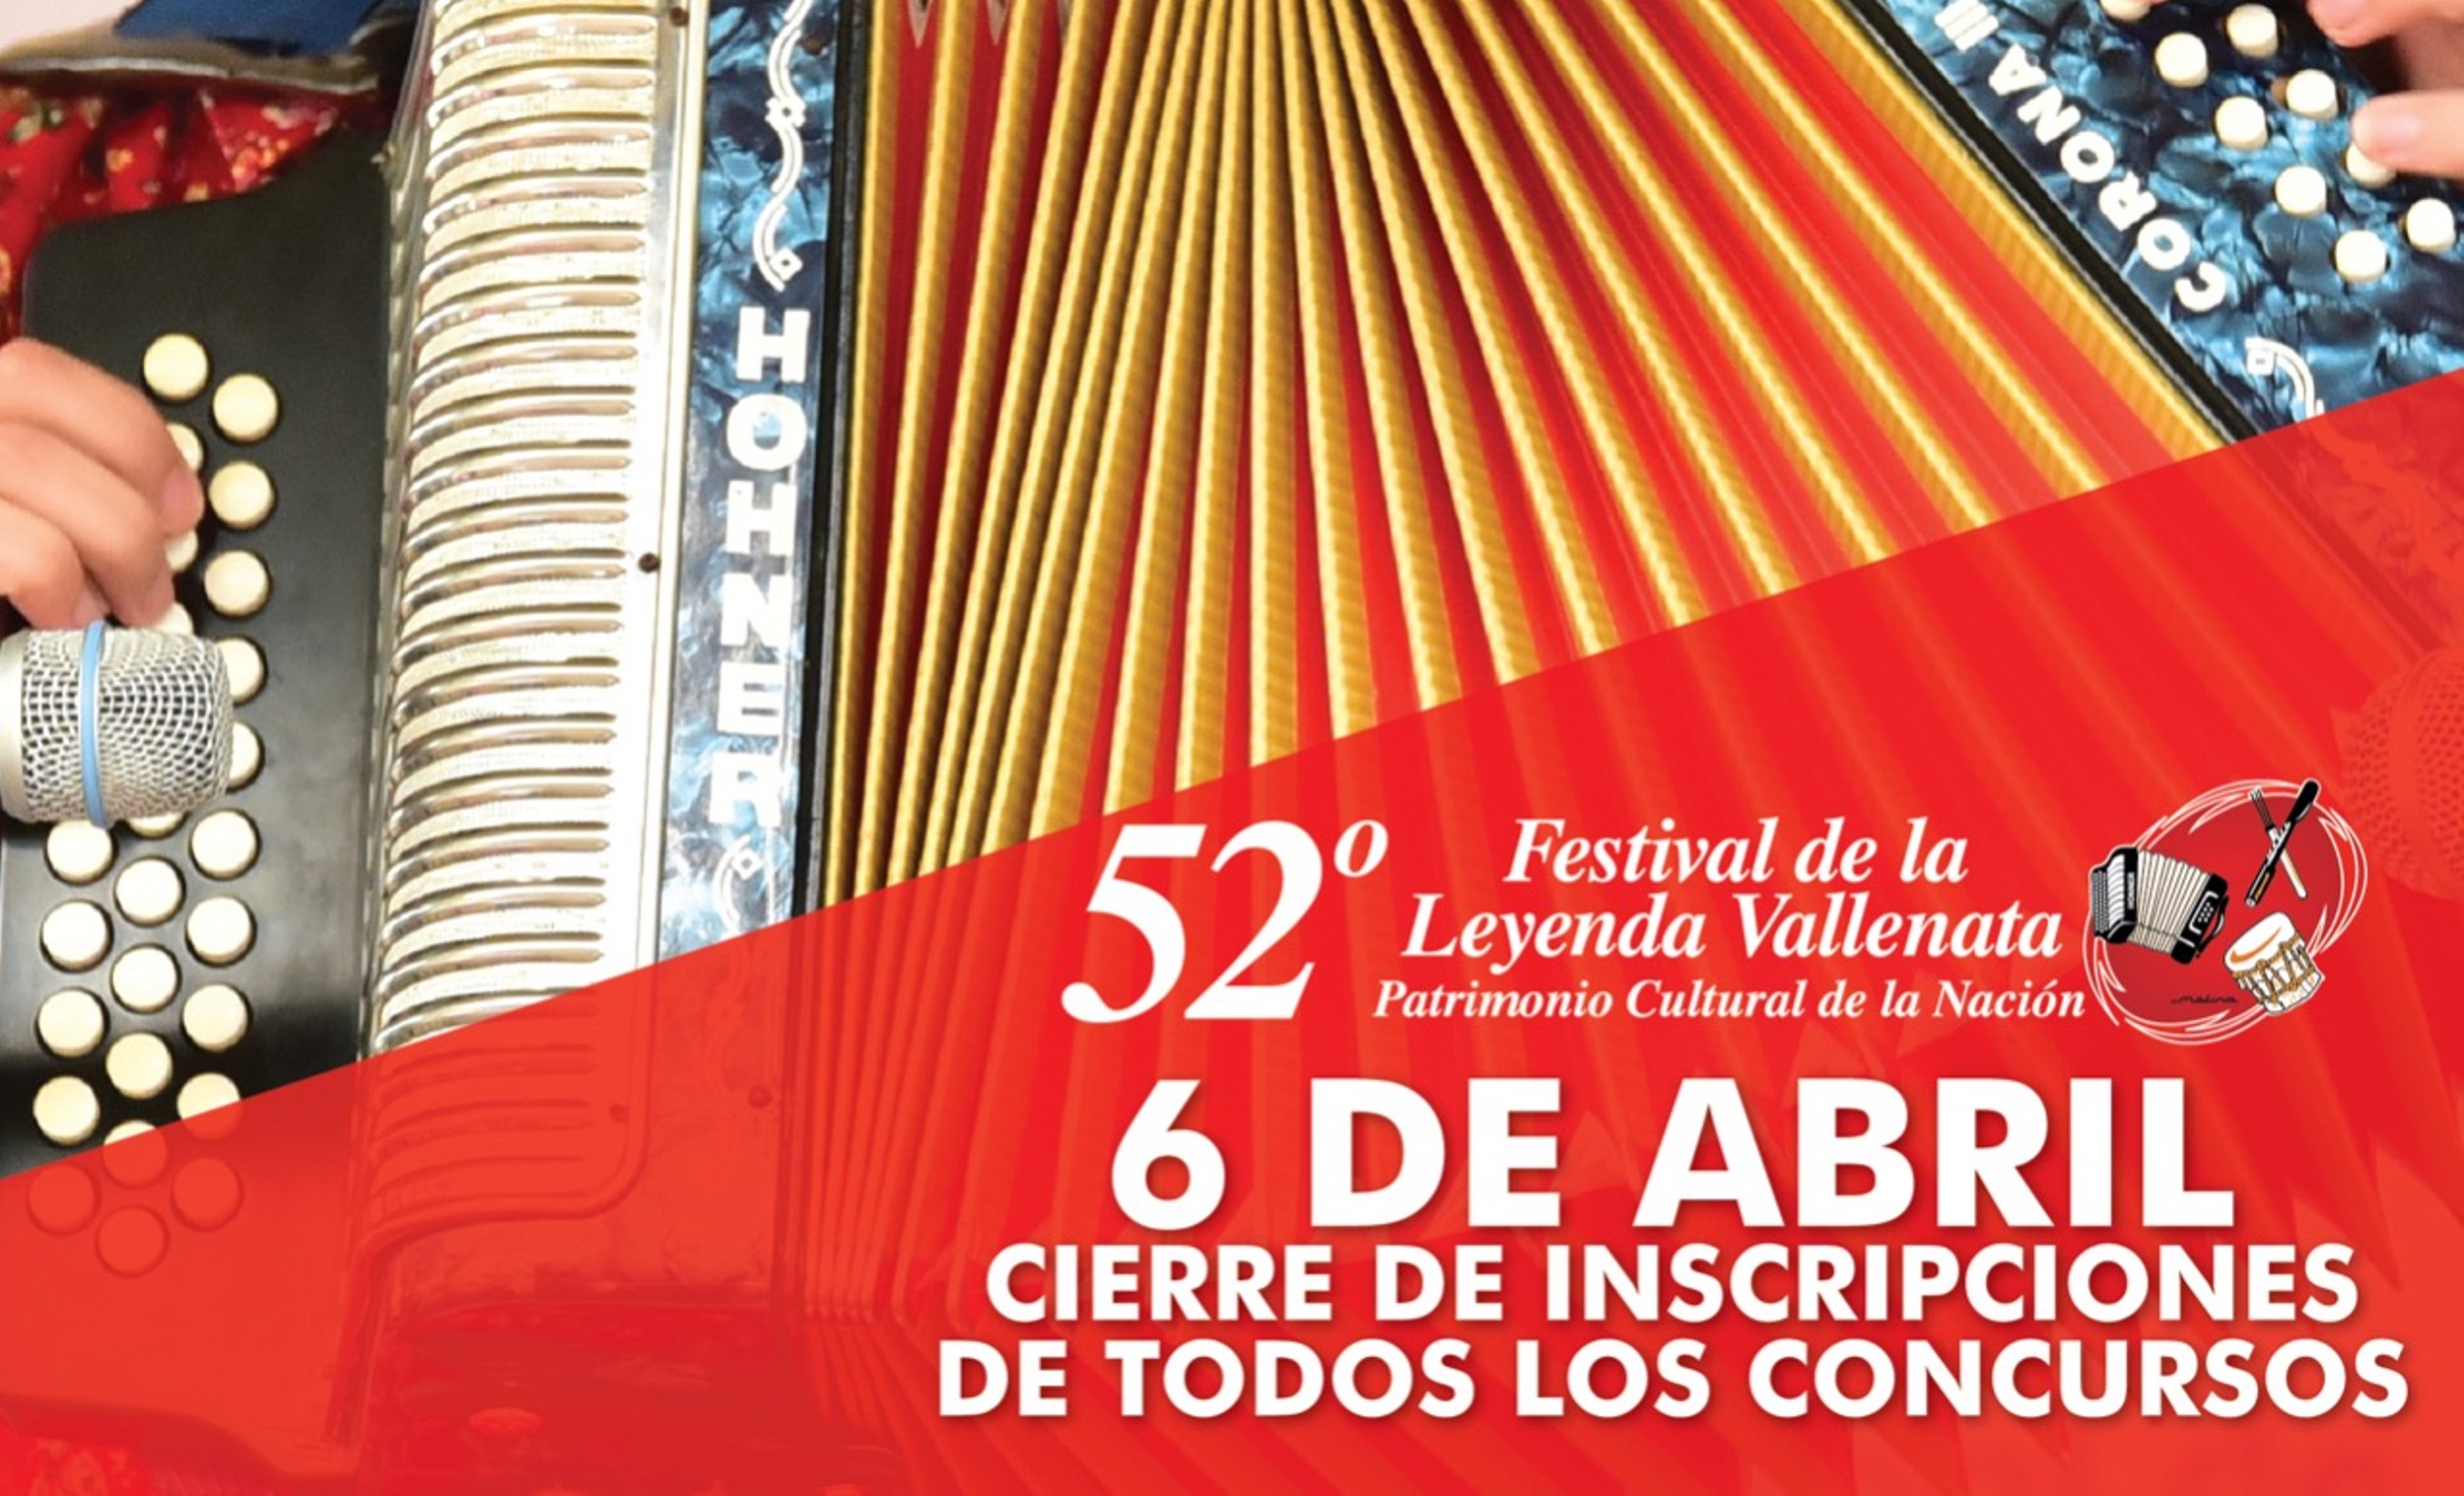 El seis de abril será el cierre de inscripciones para los concursos del 52° Festival de la Leyenda Vallenata